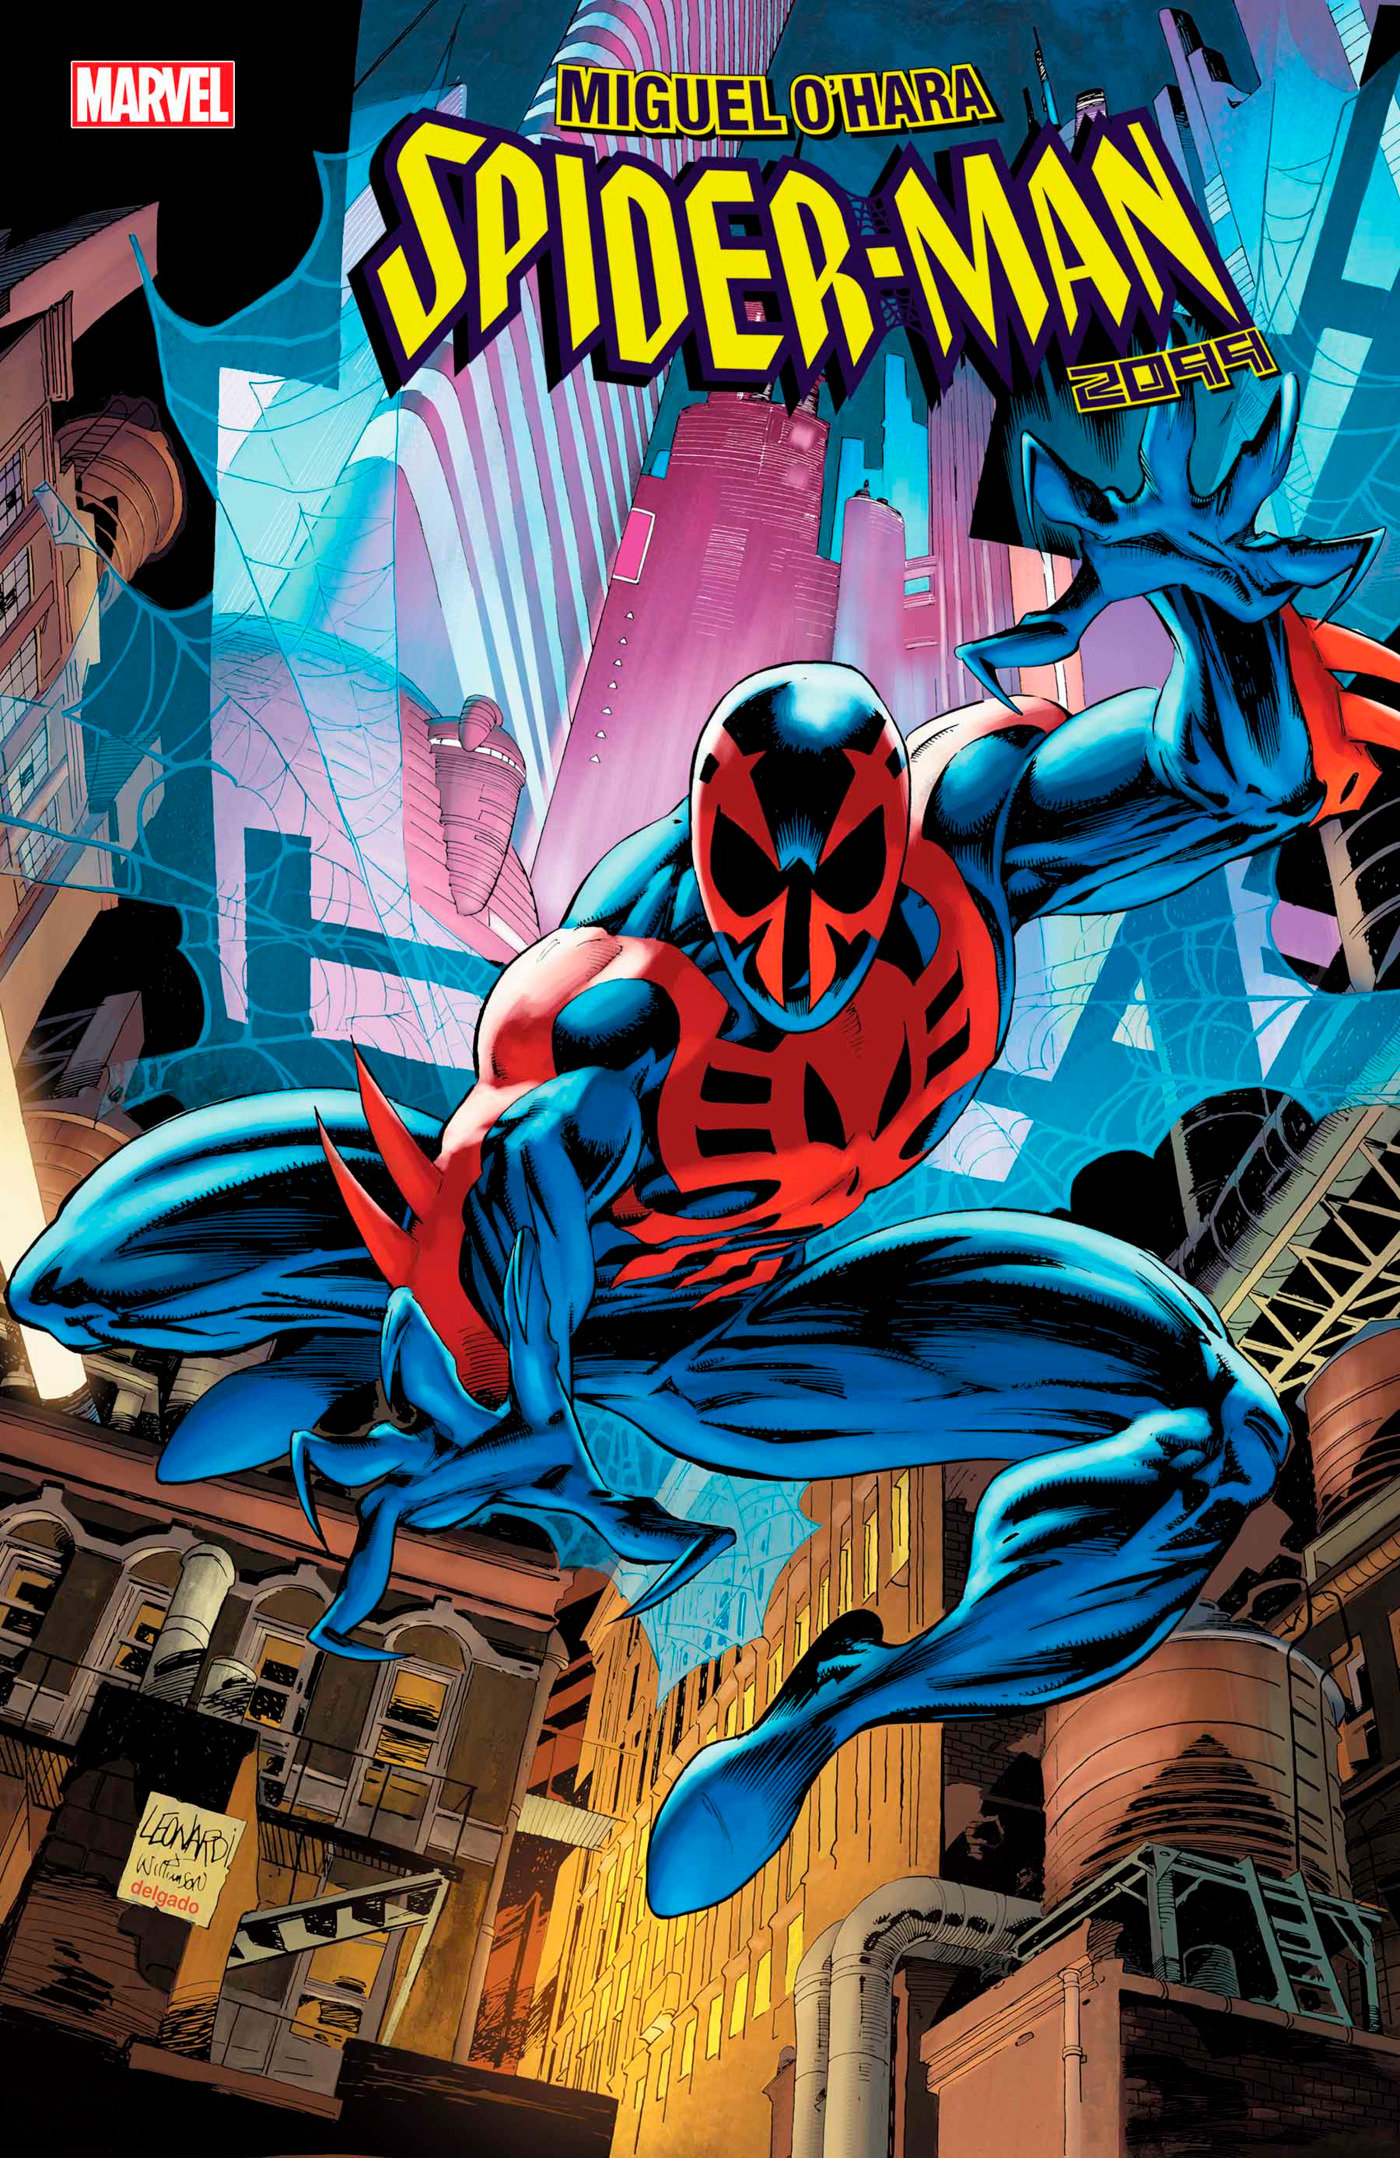 Miguel O'Hara - Spider-Man 2099 #1 Rick Leonardi Hidden Gem Variant 1 for 50 Incentive